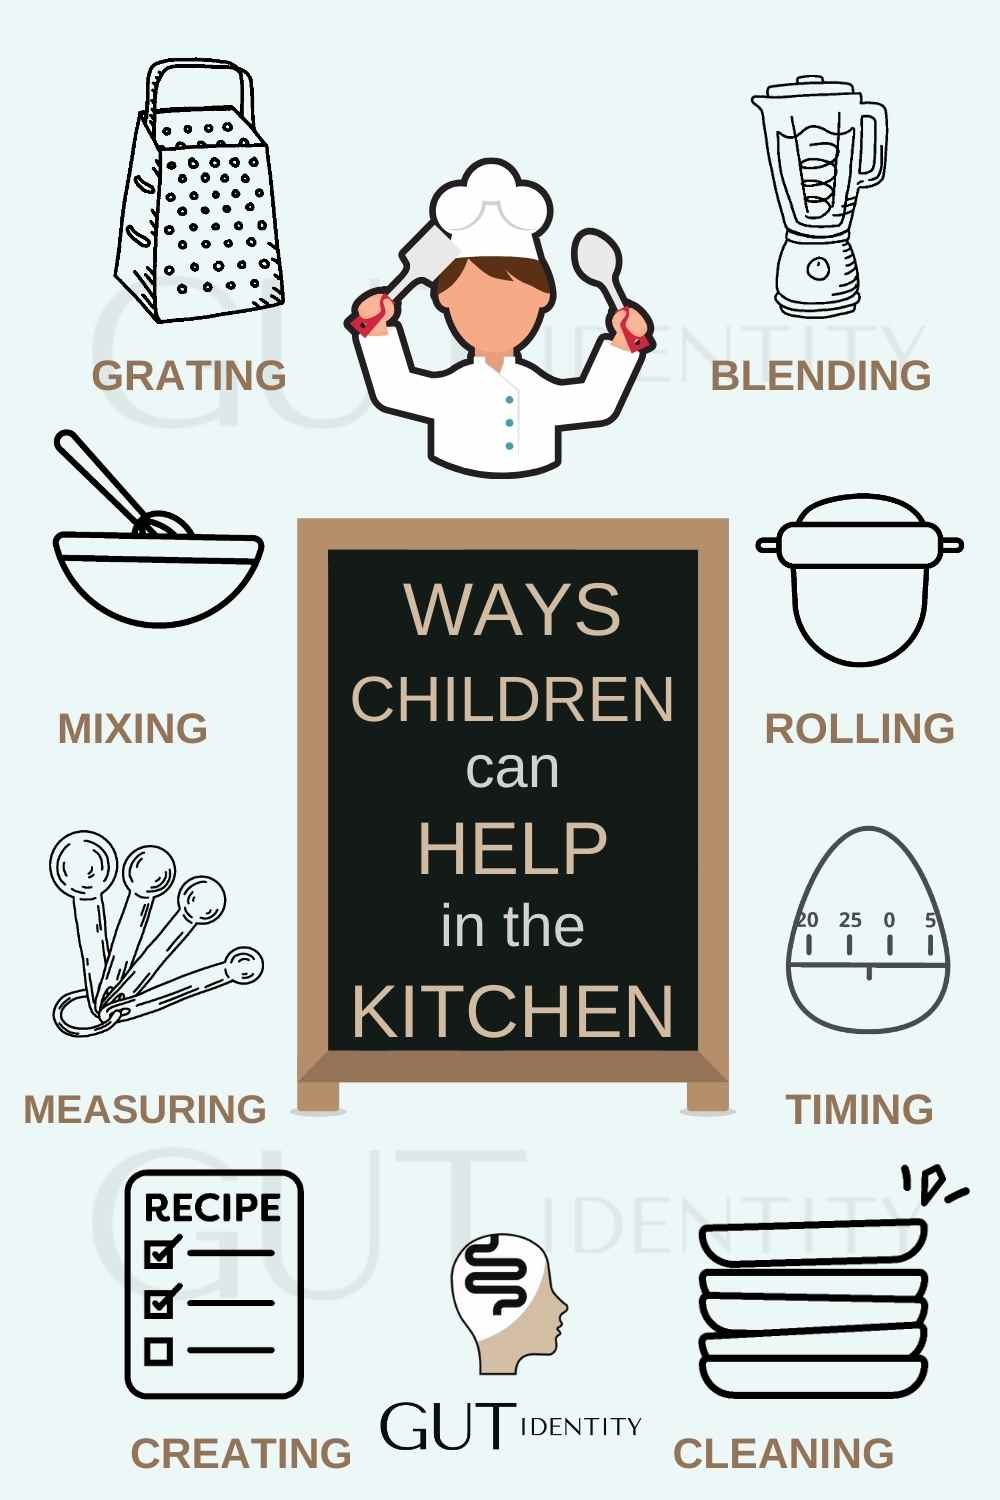 Ways to get children helping in the kitchen by Gutidentity